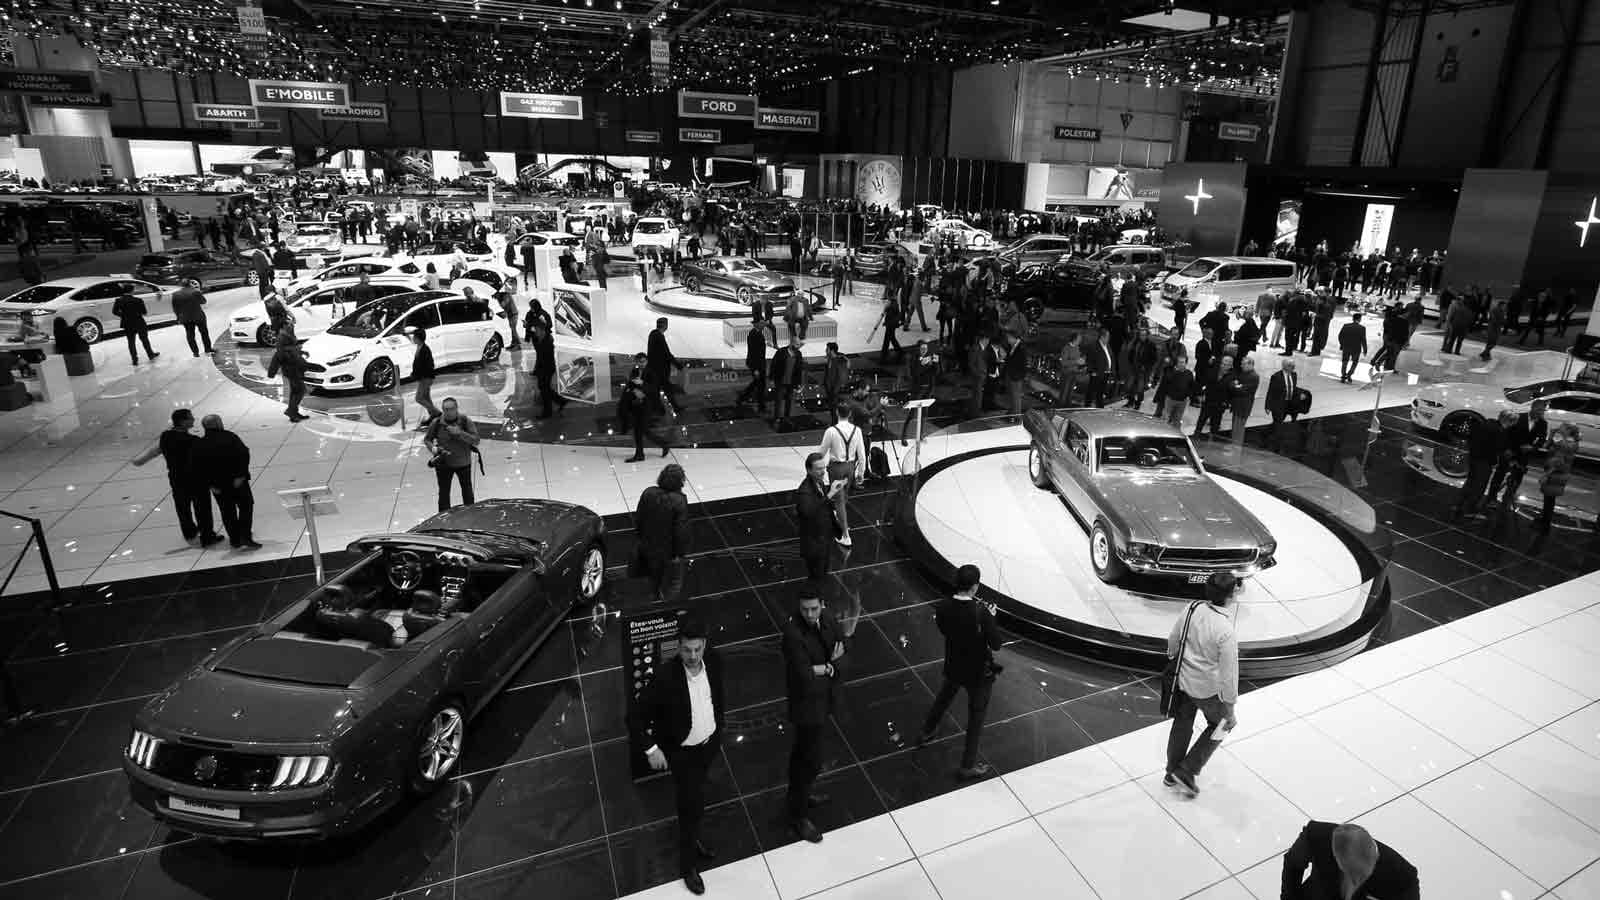 Tín đồ xe cộ chú ý: Geneva International Motor Show 2020 chính thức bị hủy bỏ